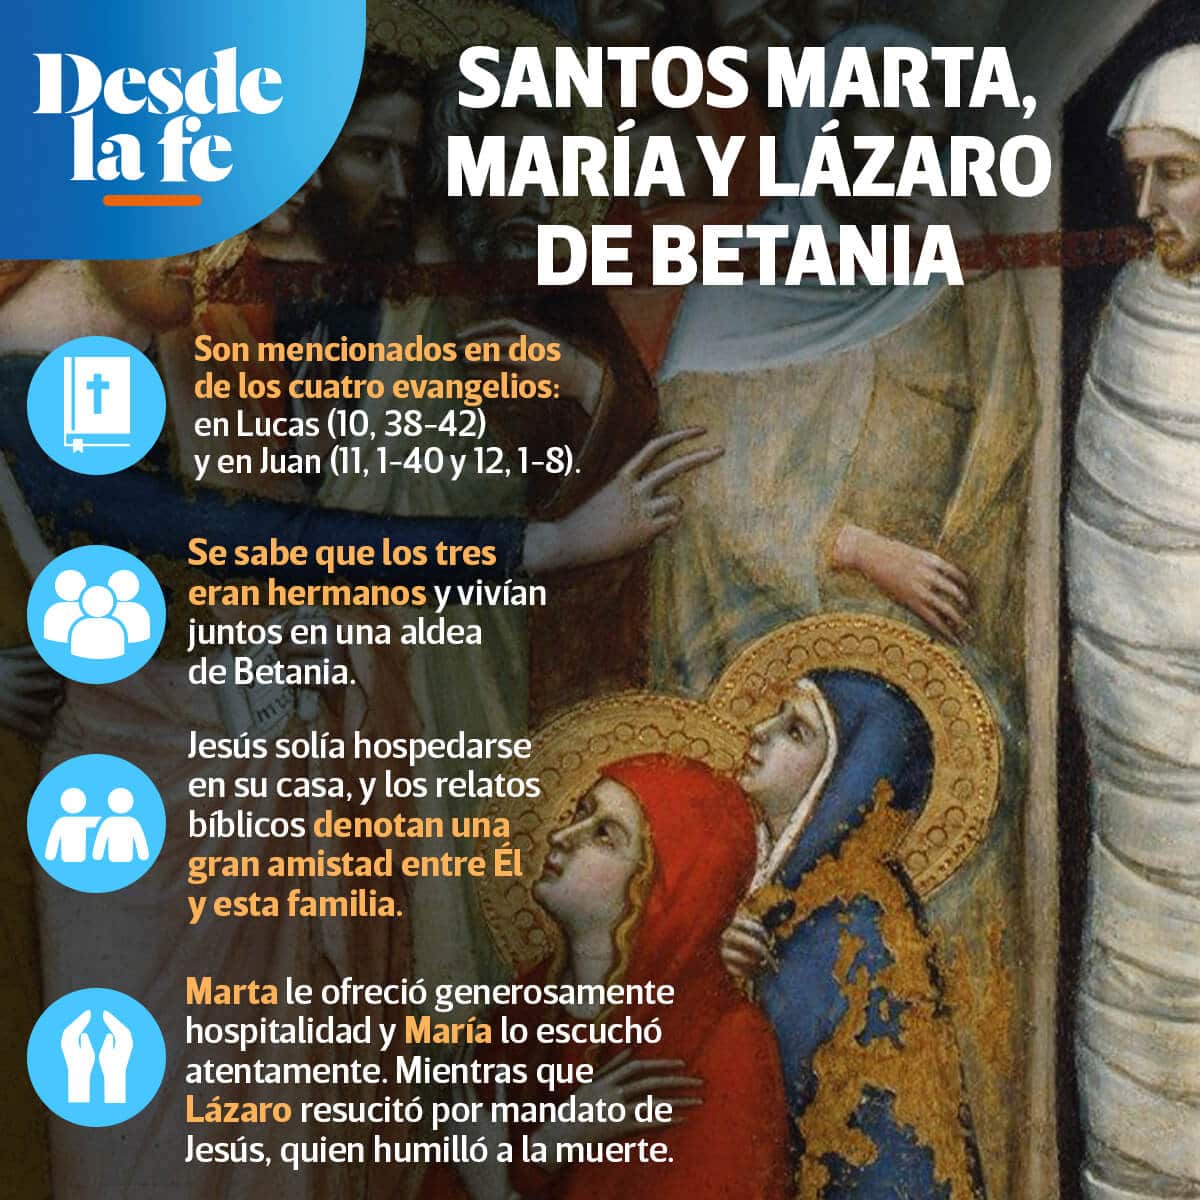 Los Santos Marta, María y Lázaro.